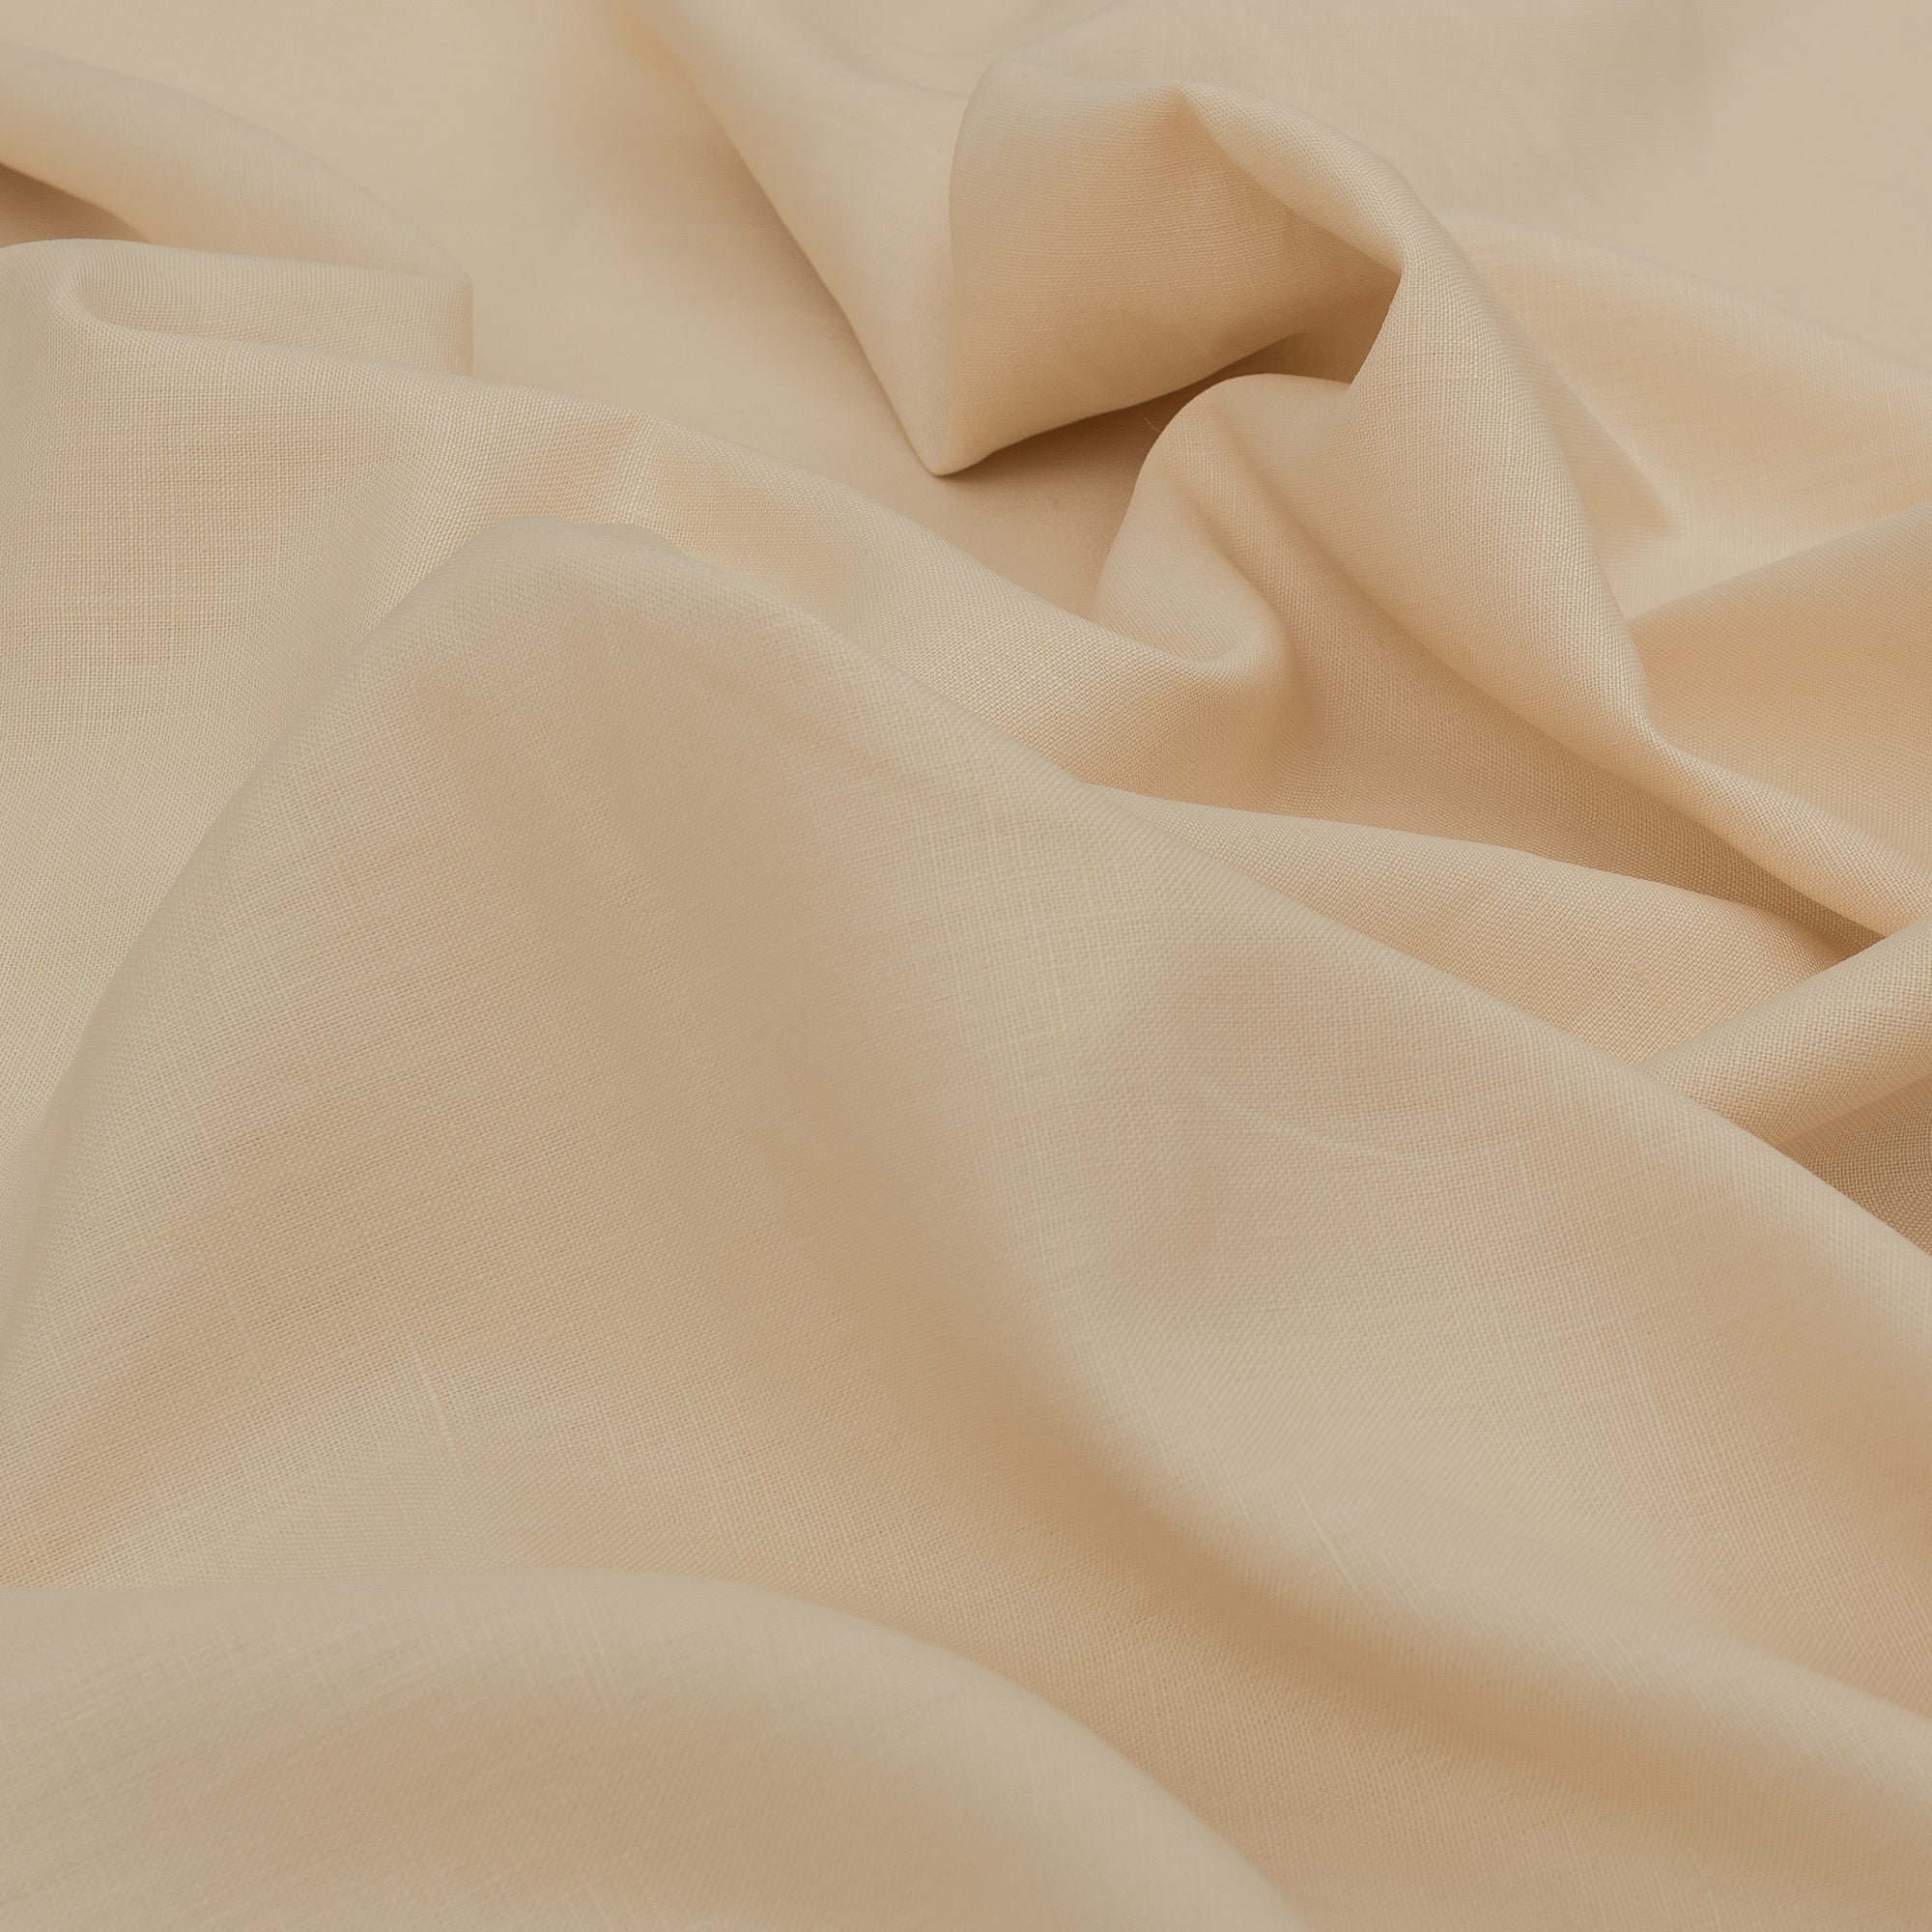 Buttermilk Cream 100% Linen Fabric